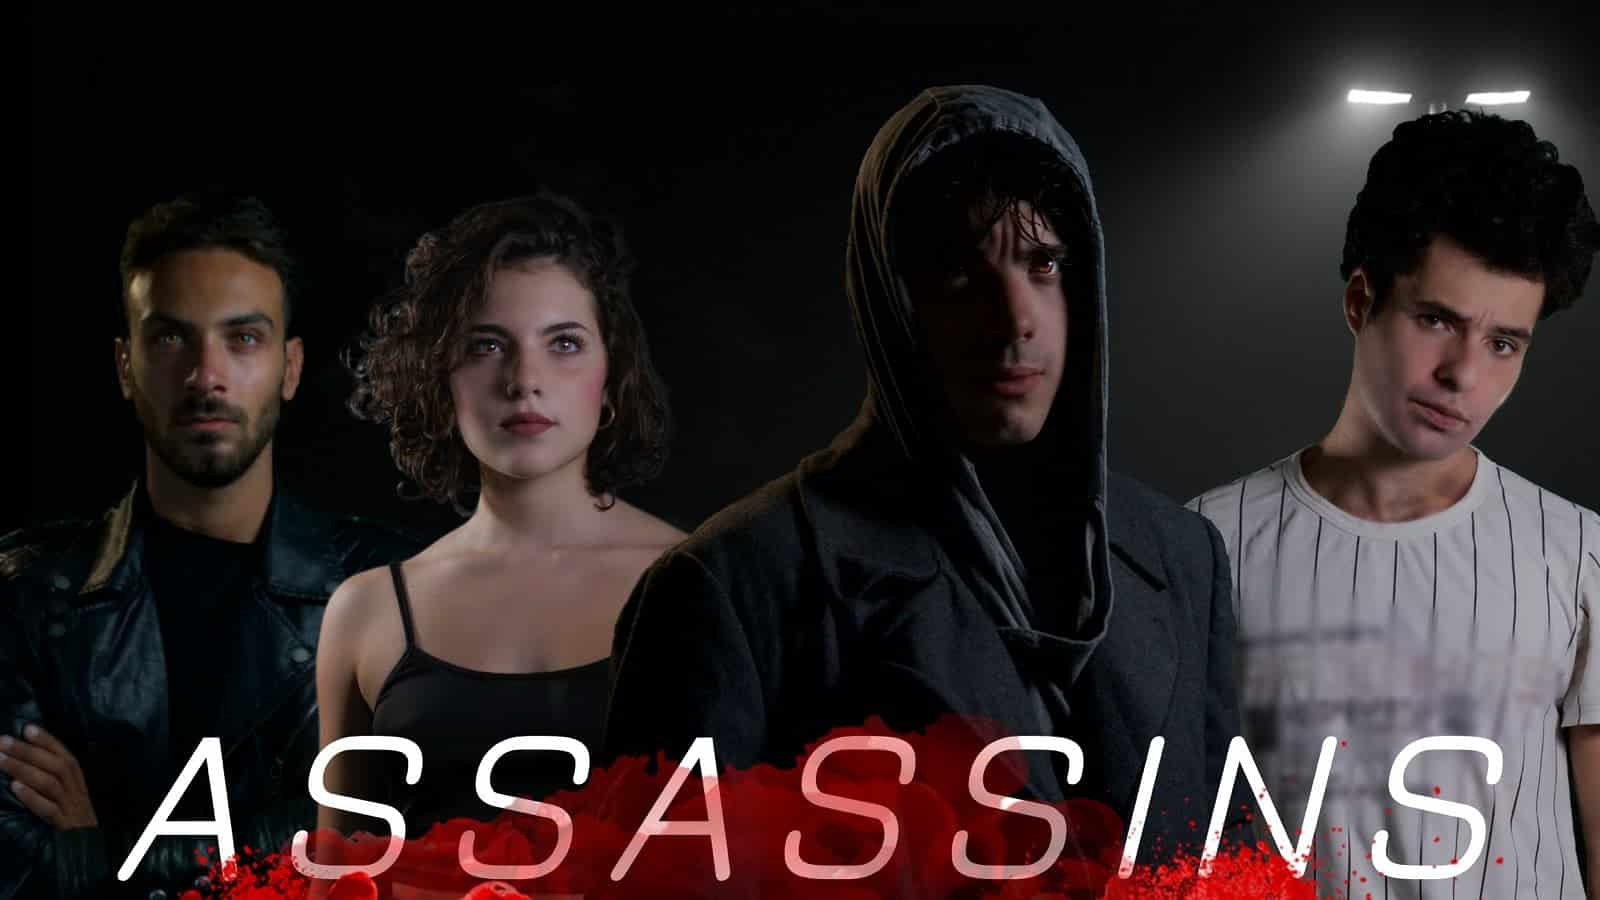 Assassins: trailer della serie italiana ispirata ad Assassin’s Creed. Su Prime Video